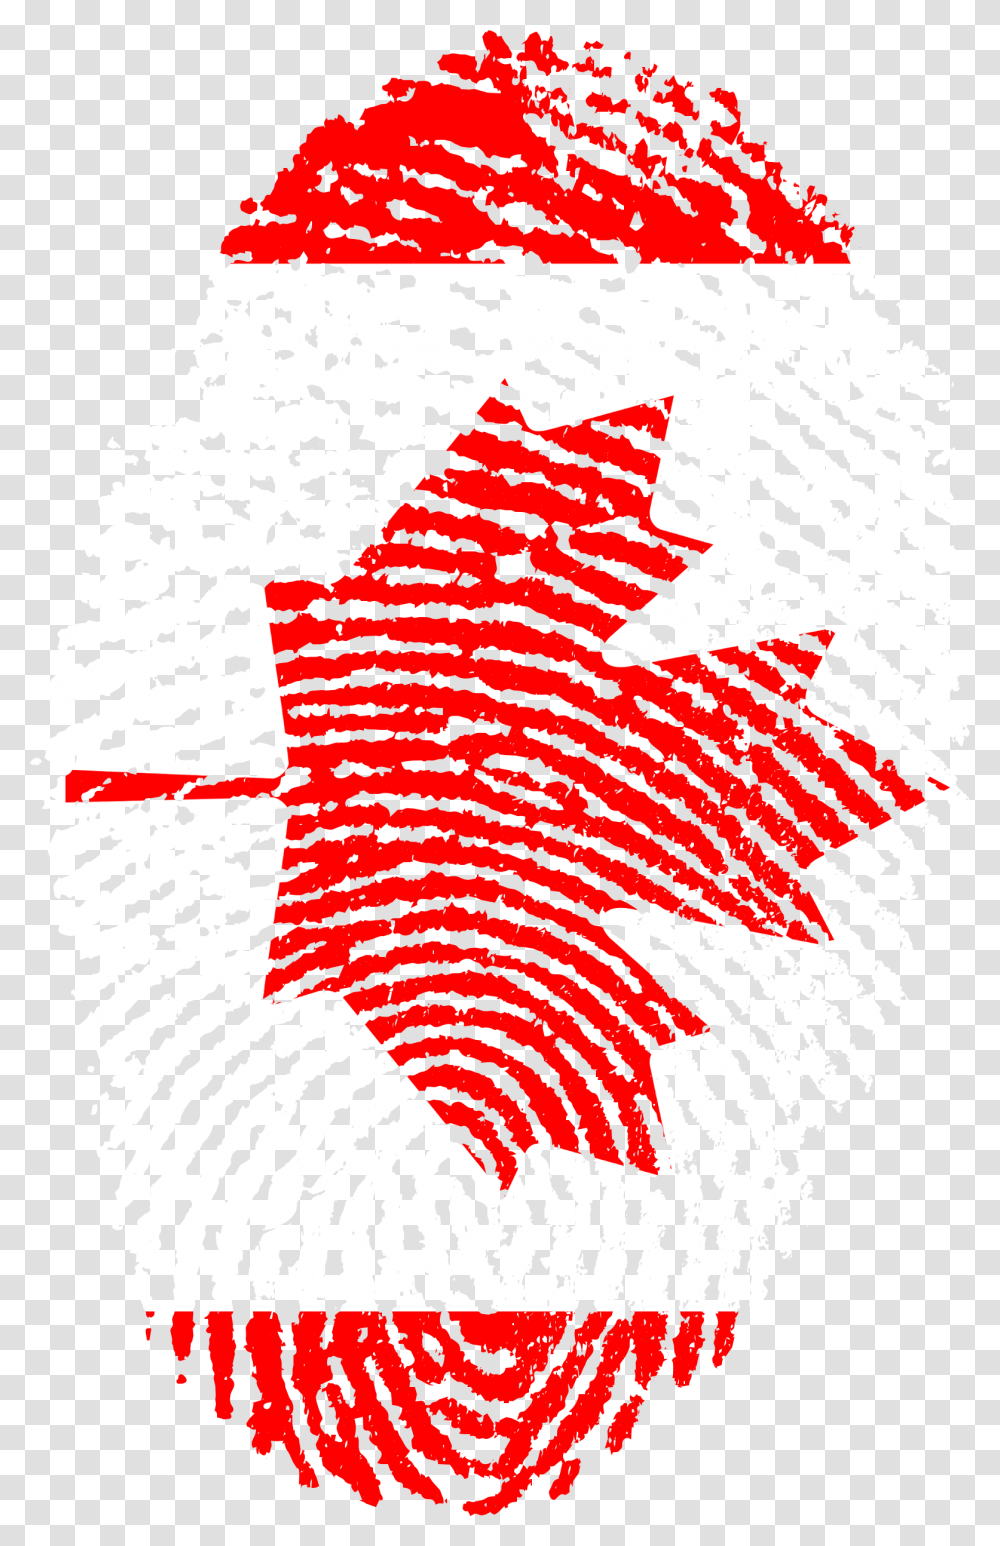 Canada Flag Fingerprint Country Indonesia Flag Fingerprint, Word, Rug, Logo Transparent Png